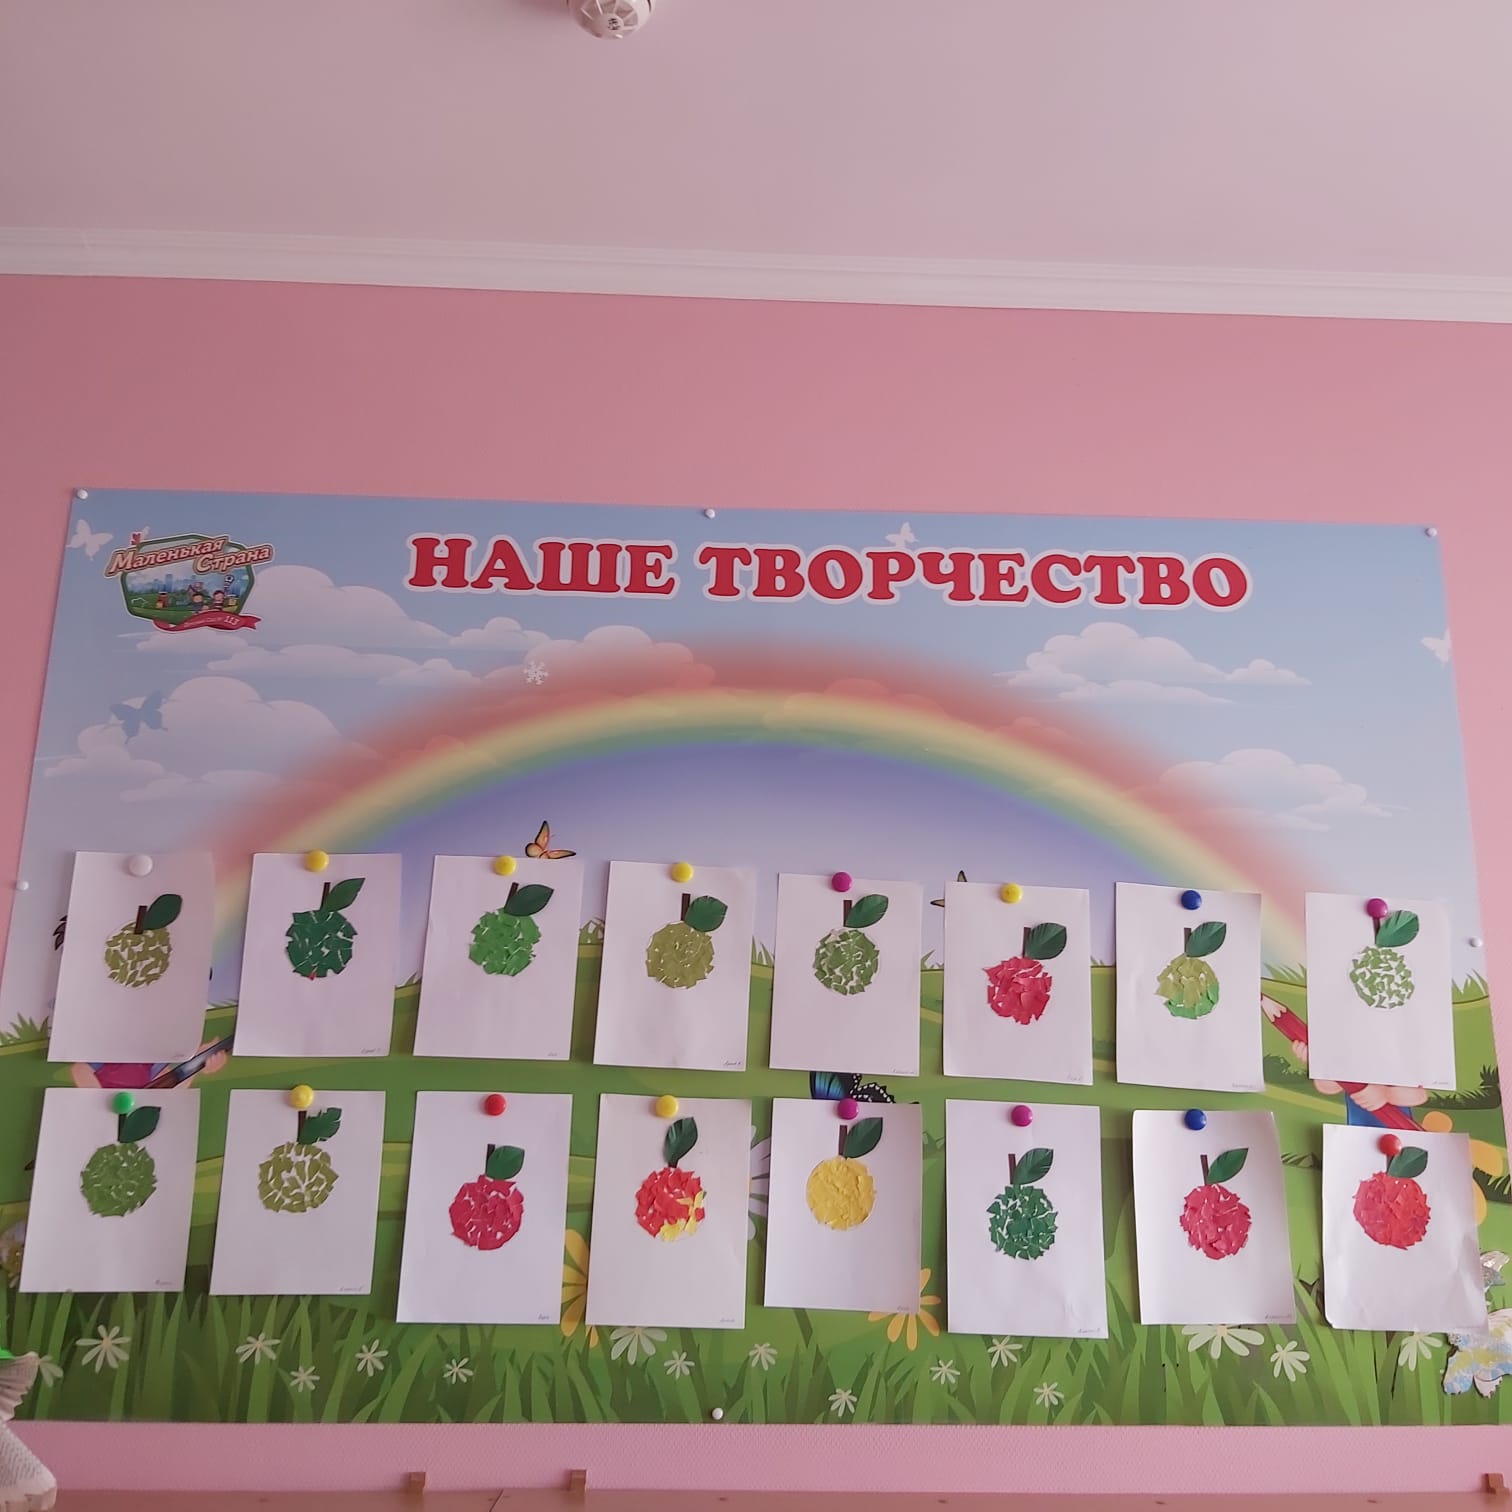 Государственное общеобразовательное учреждение Ярославской области 